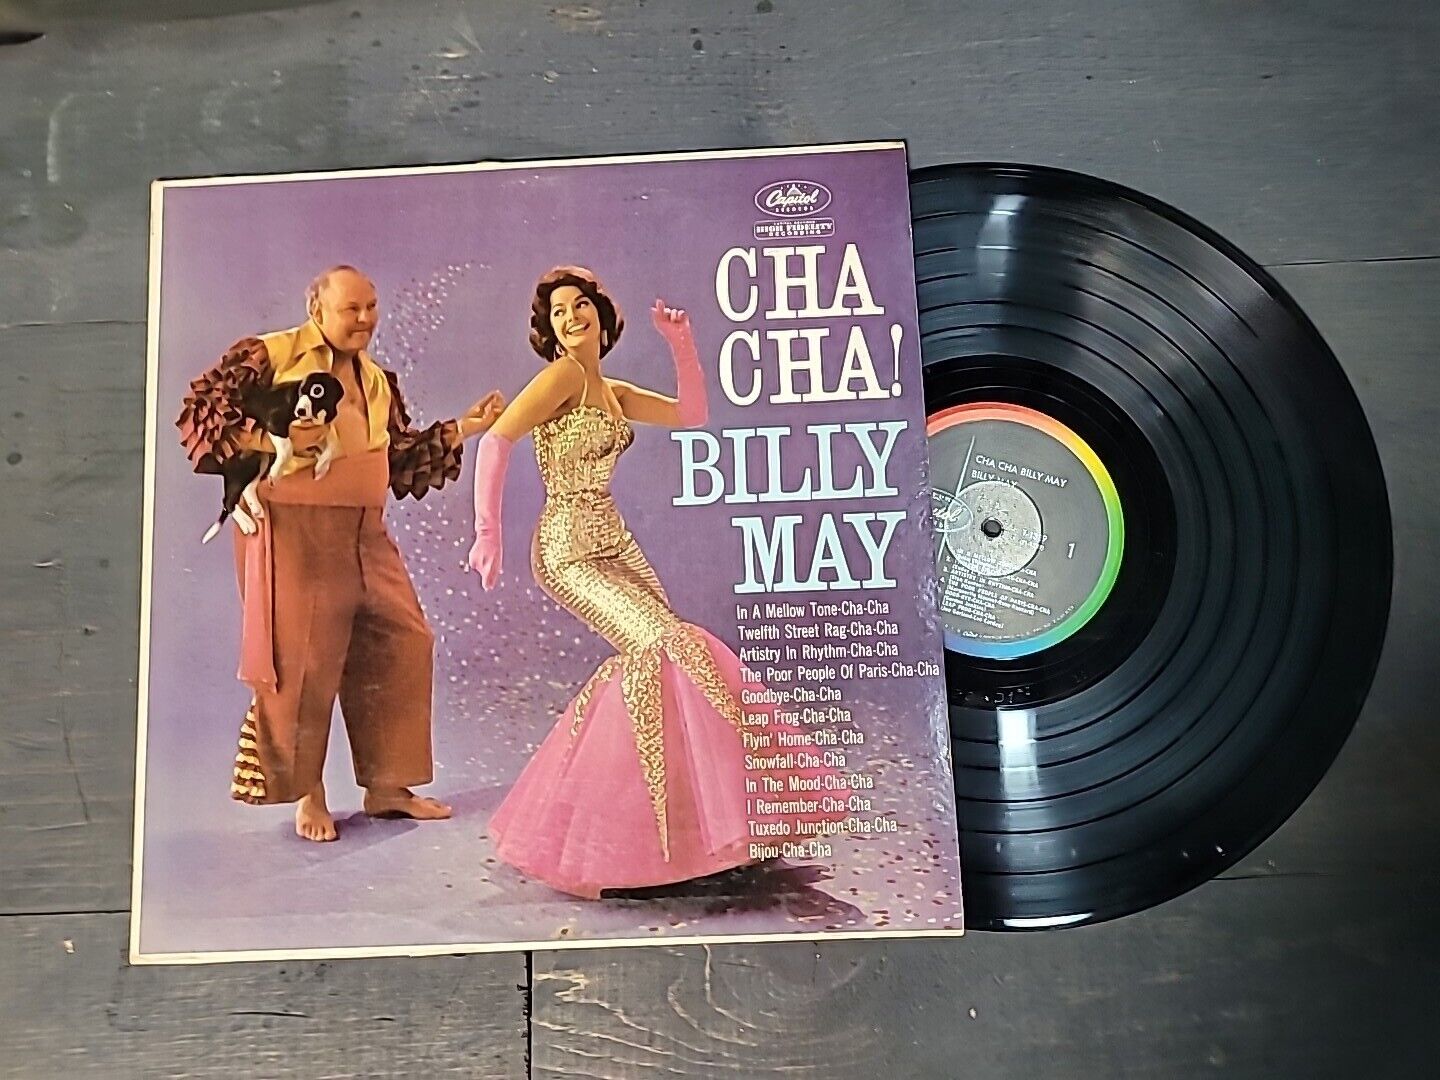 Billy May - Cha Cha LP - Vinyl Record - Capitol T1329 Rare US Ship Vintage